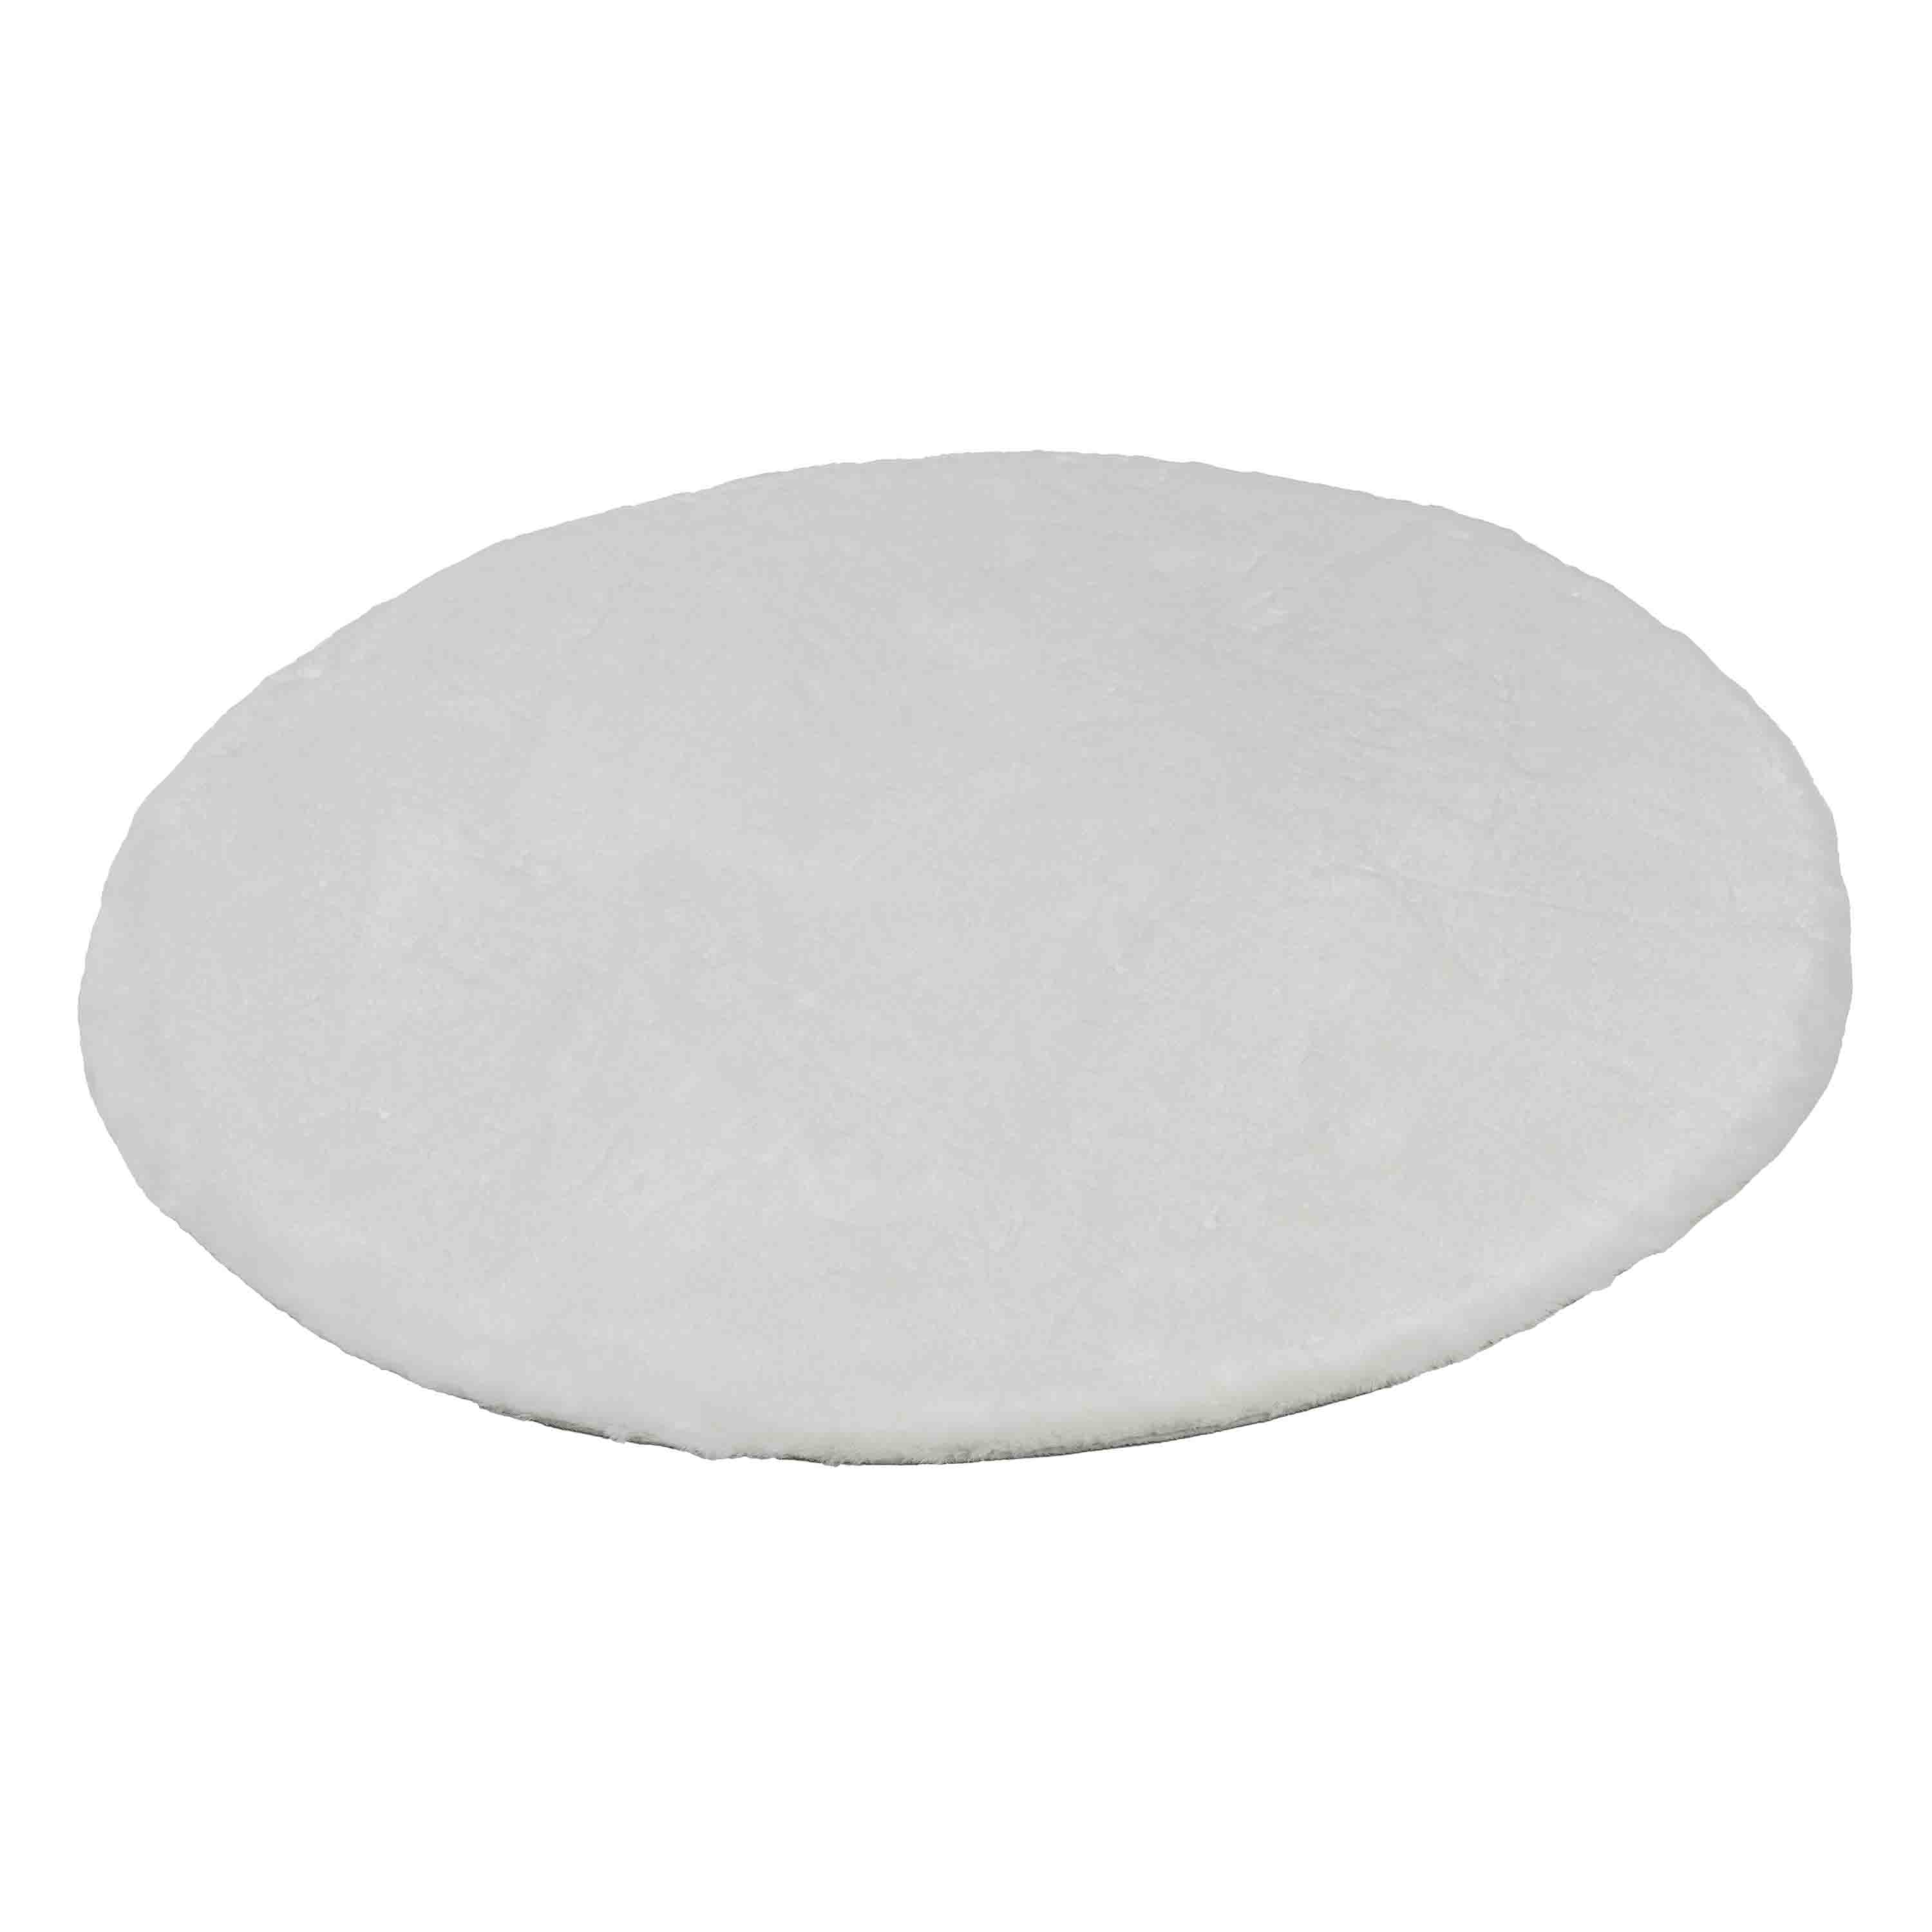 Schöner Wohnen Kollektion Teppich Tender 120 cm Rund Weiß